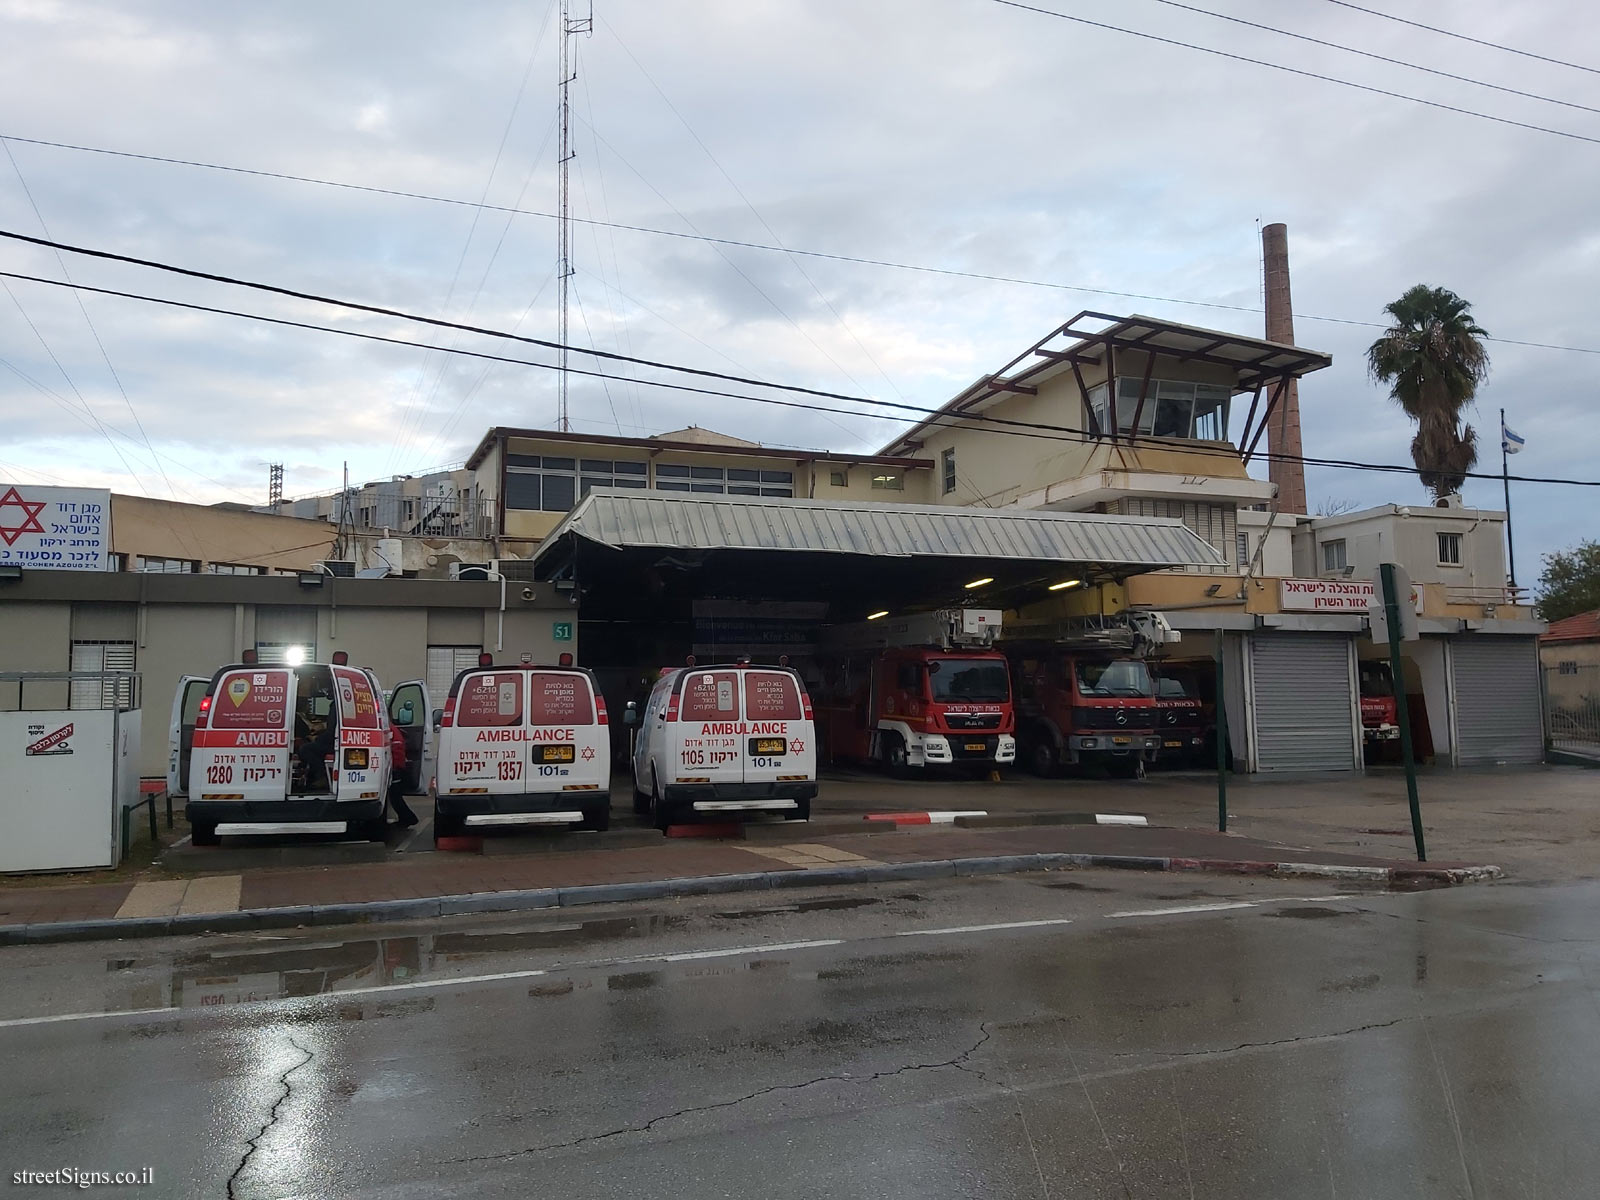 The fire station and MDA station - Tchernichovsky St 51, Kefar Sava, Israel